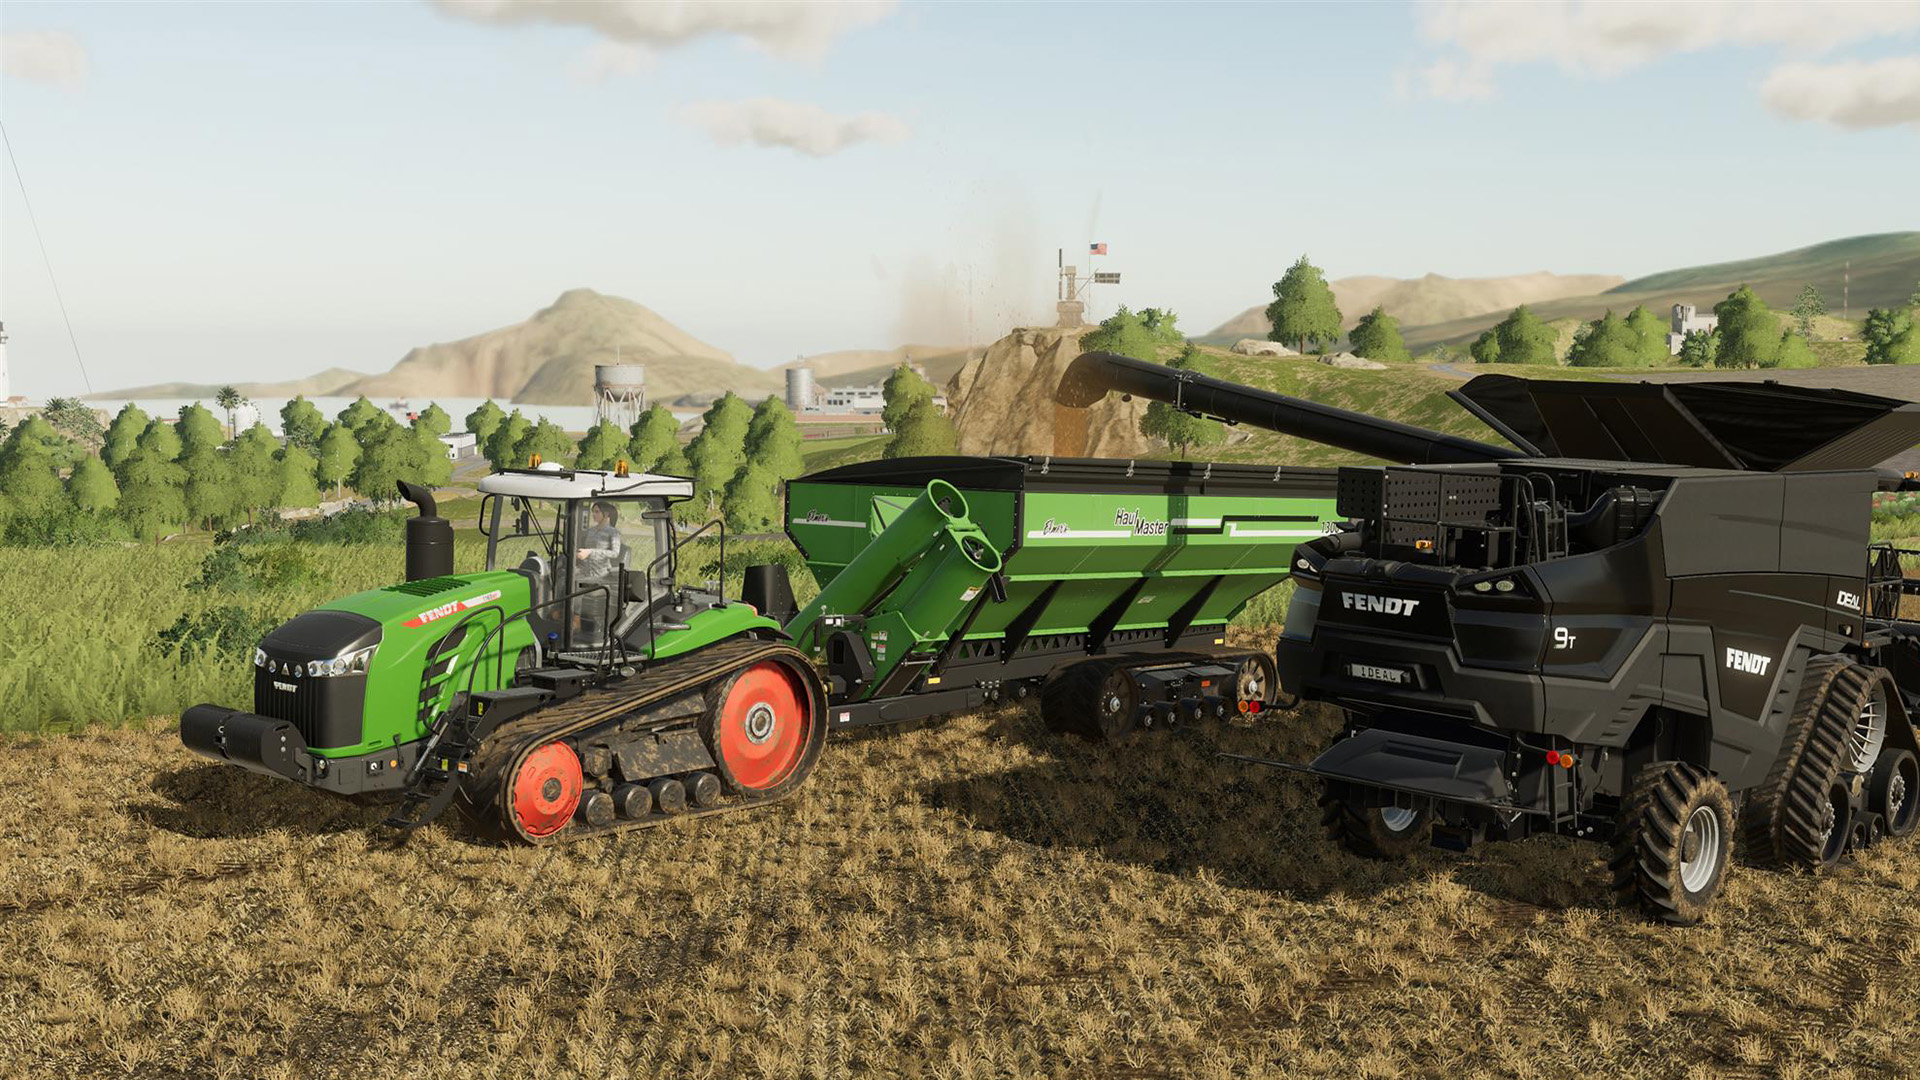 Farming simulator 19 premium edition